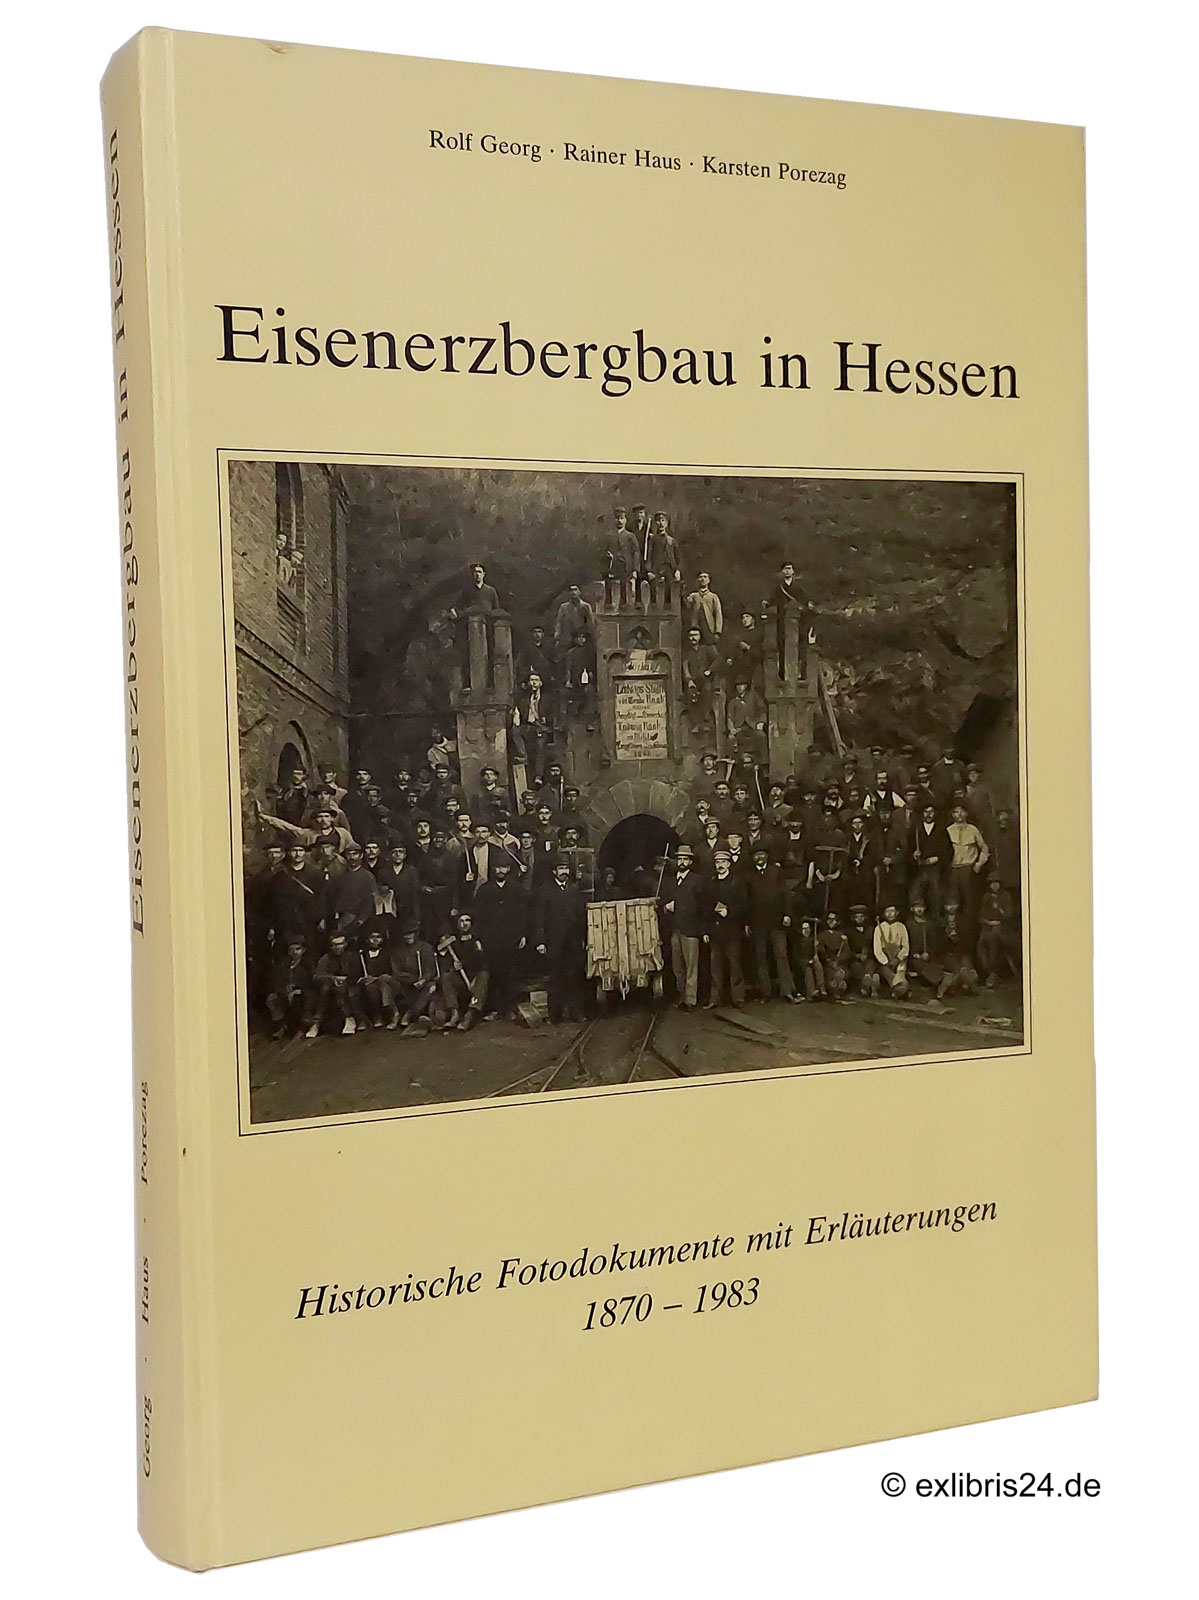 Eisenerzbergbau in Hessen : Historische Fotodokumente mit Erläuterungen 1870-1983 - Georg, Rolf; Haus, Rainer; Porezag, Karsten